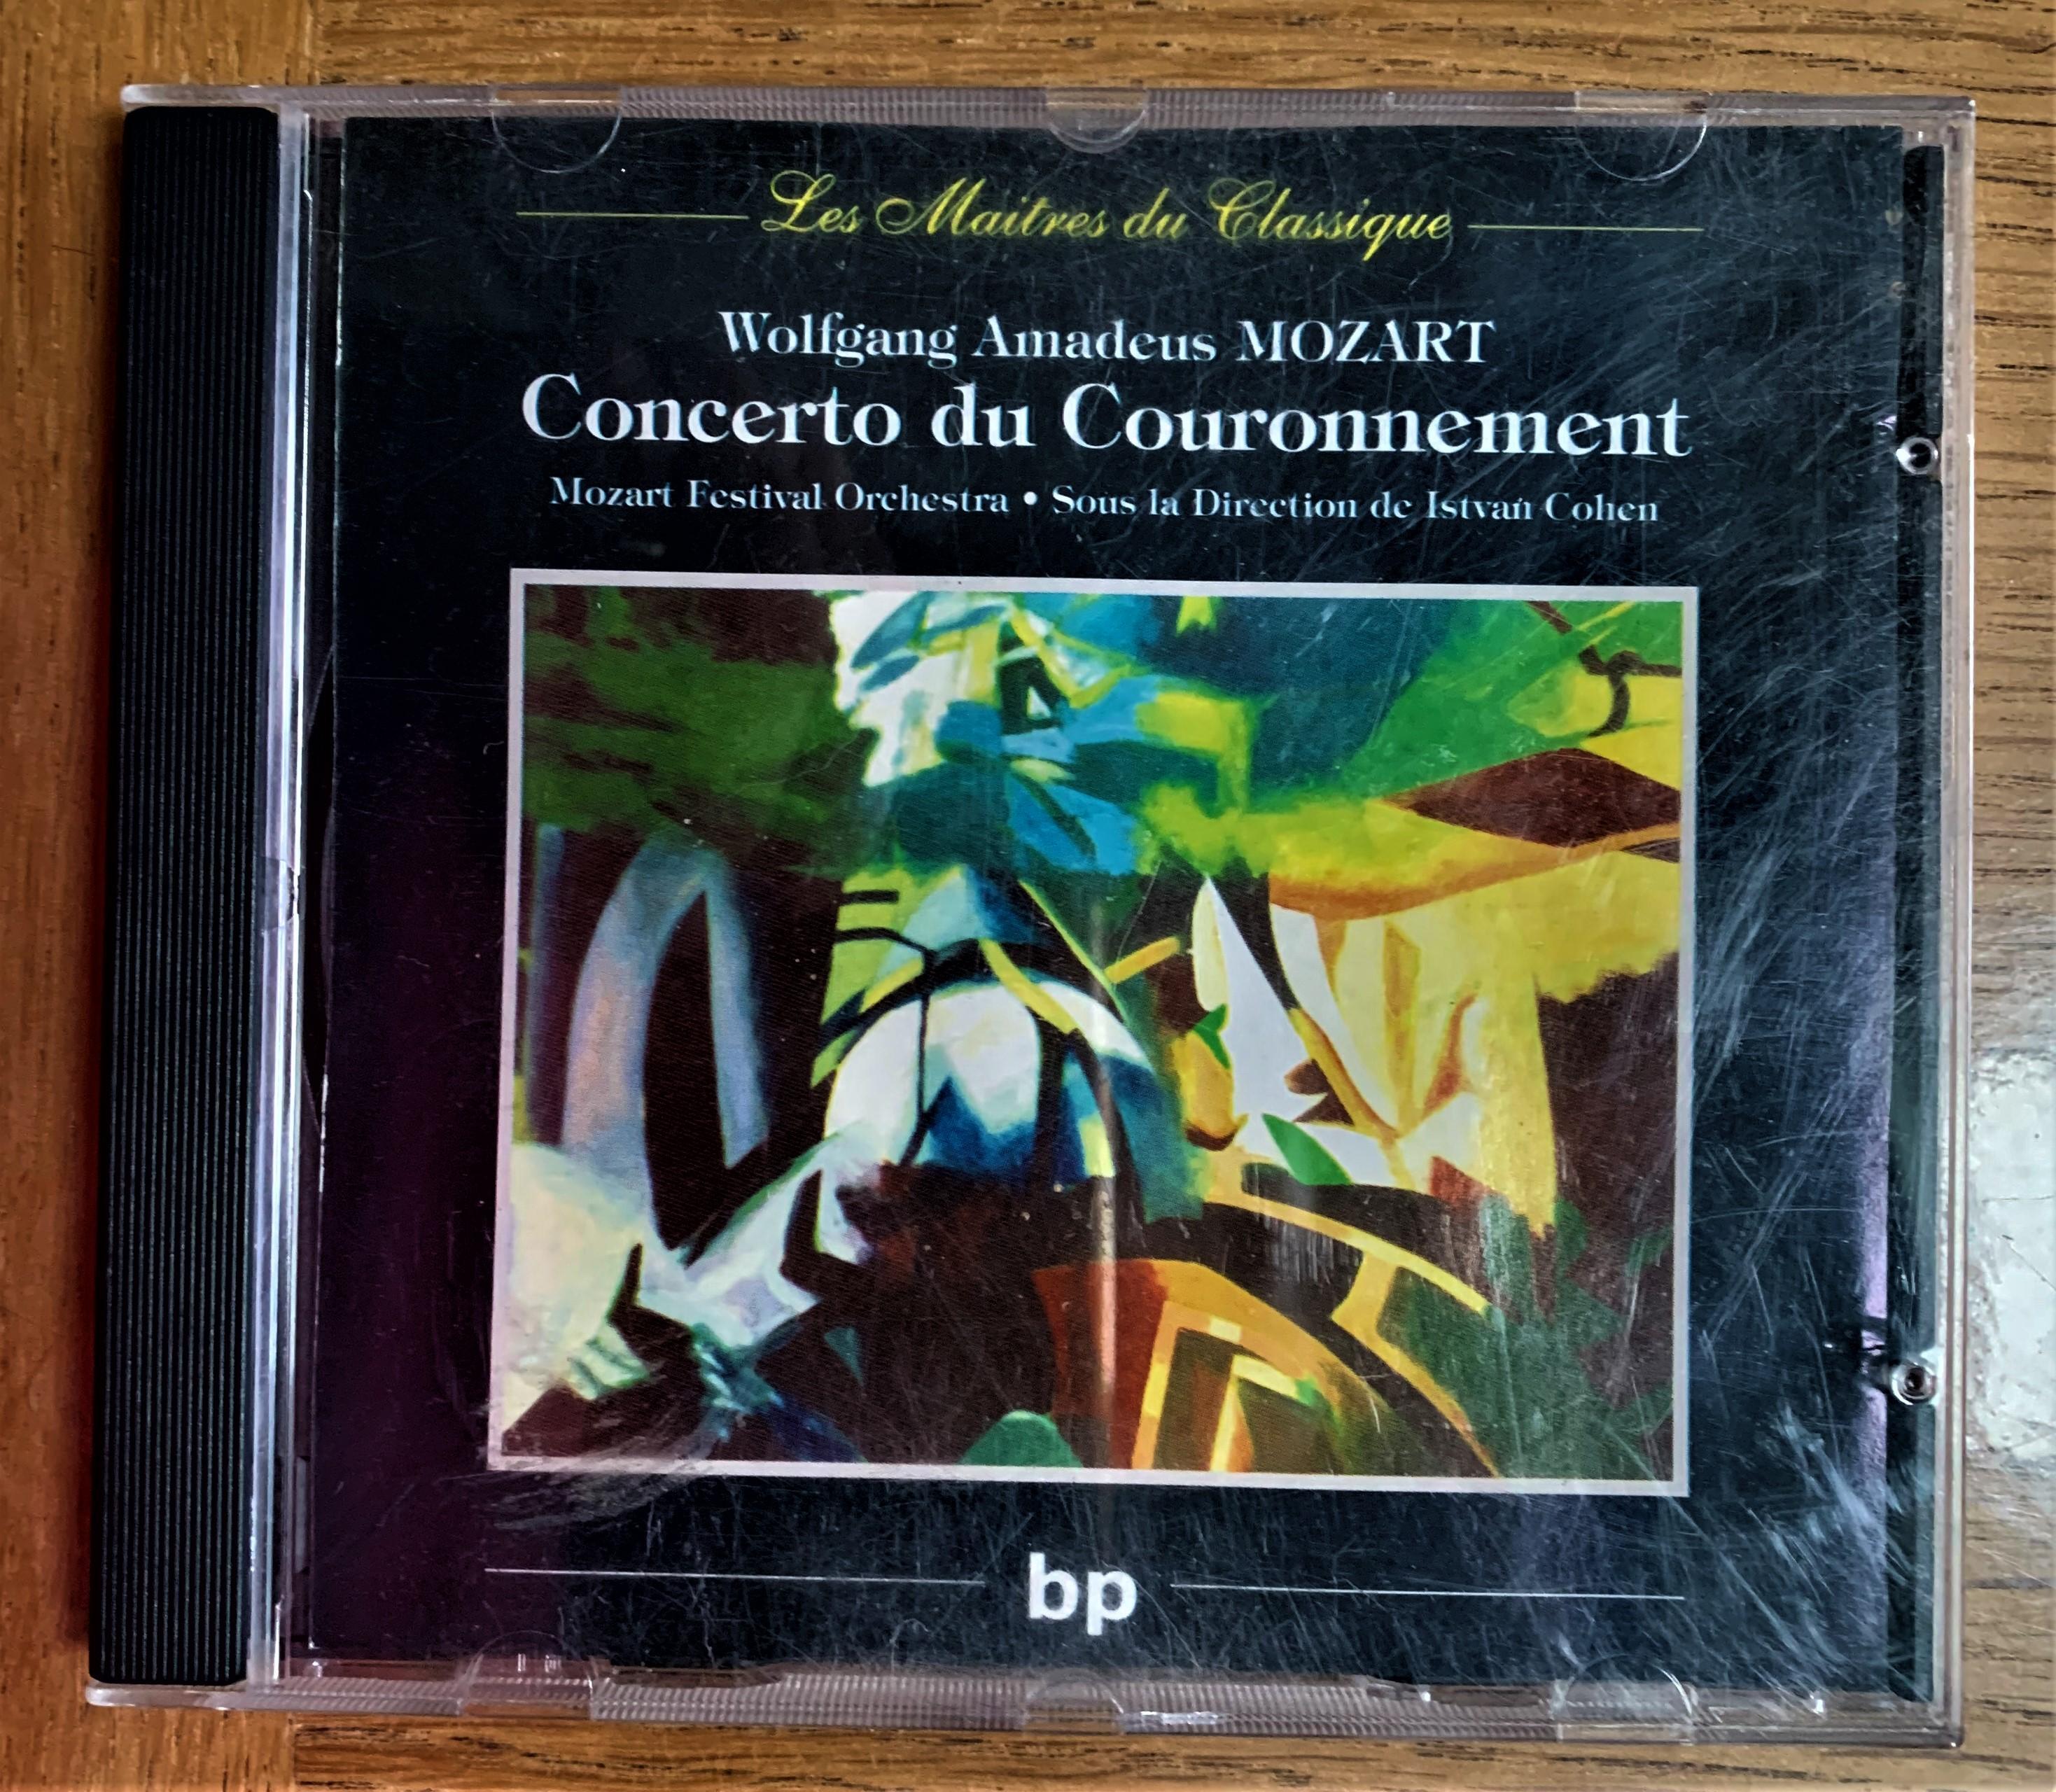 troc de troc cd mozart "concerto du couronnement" image 0